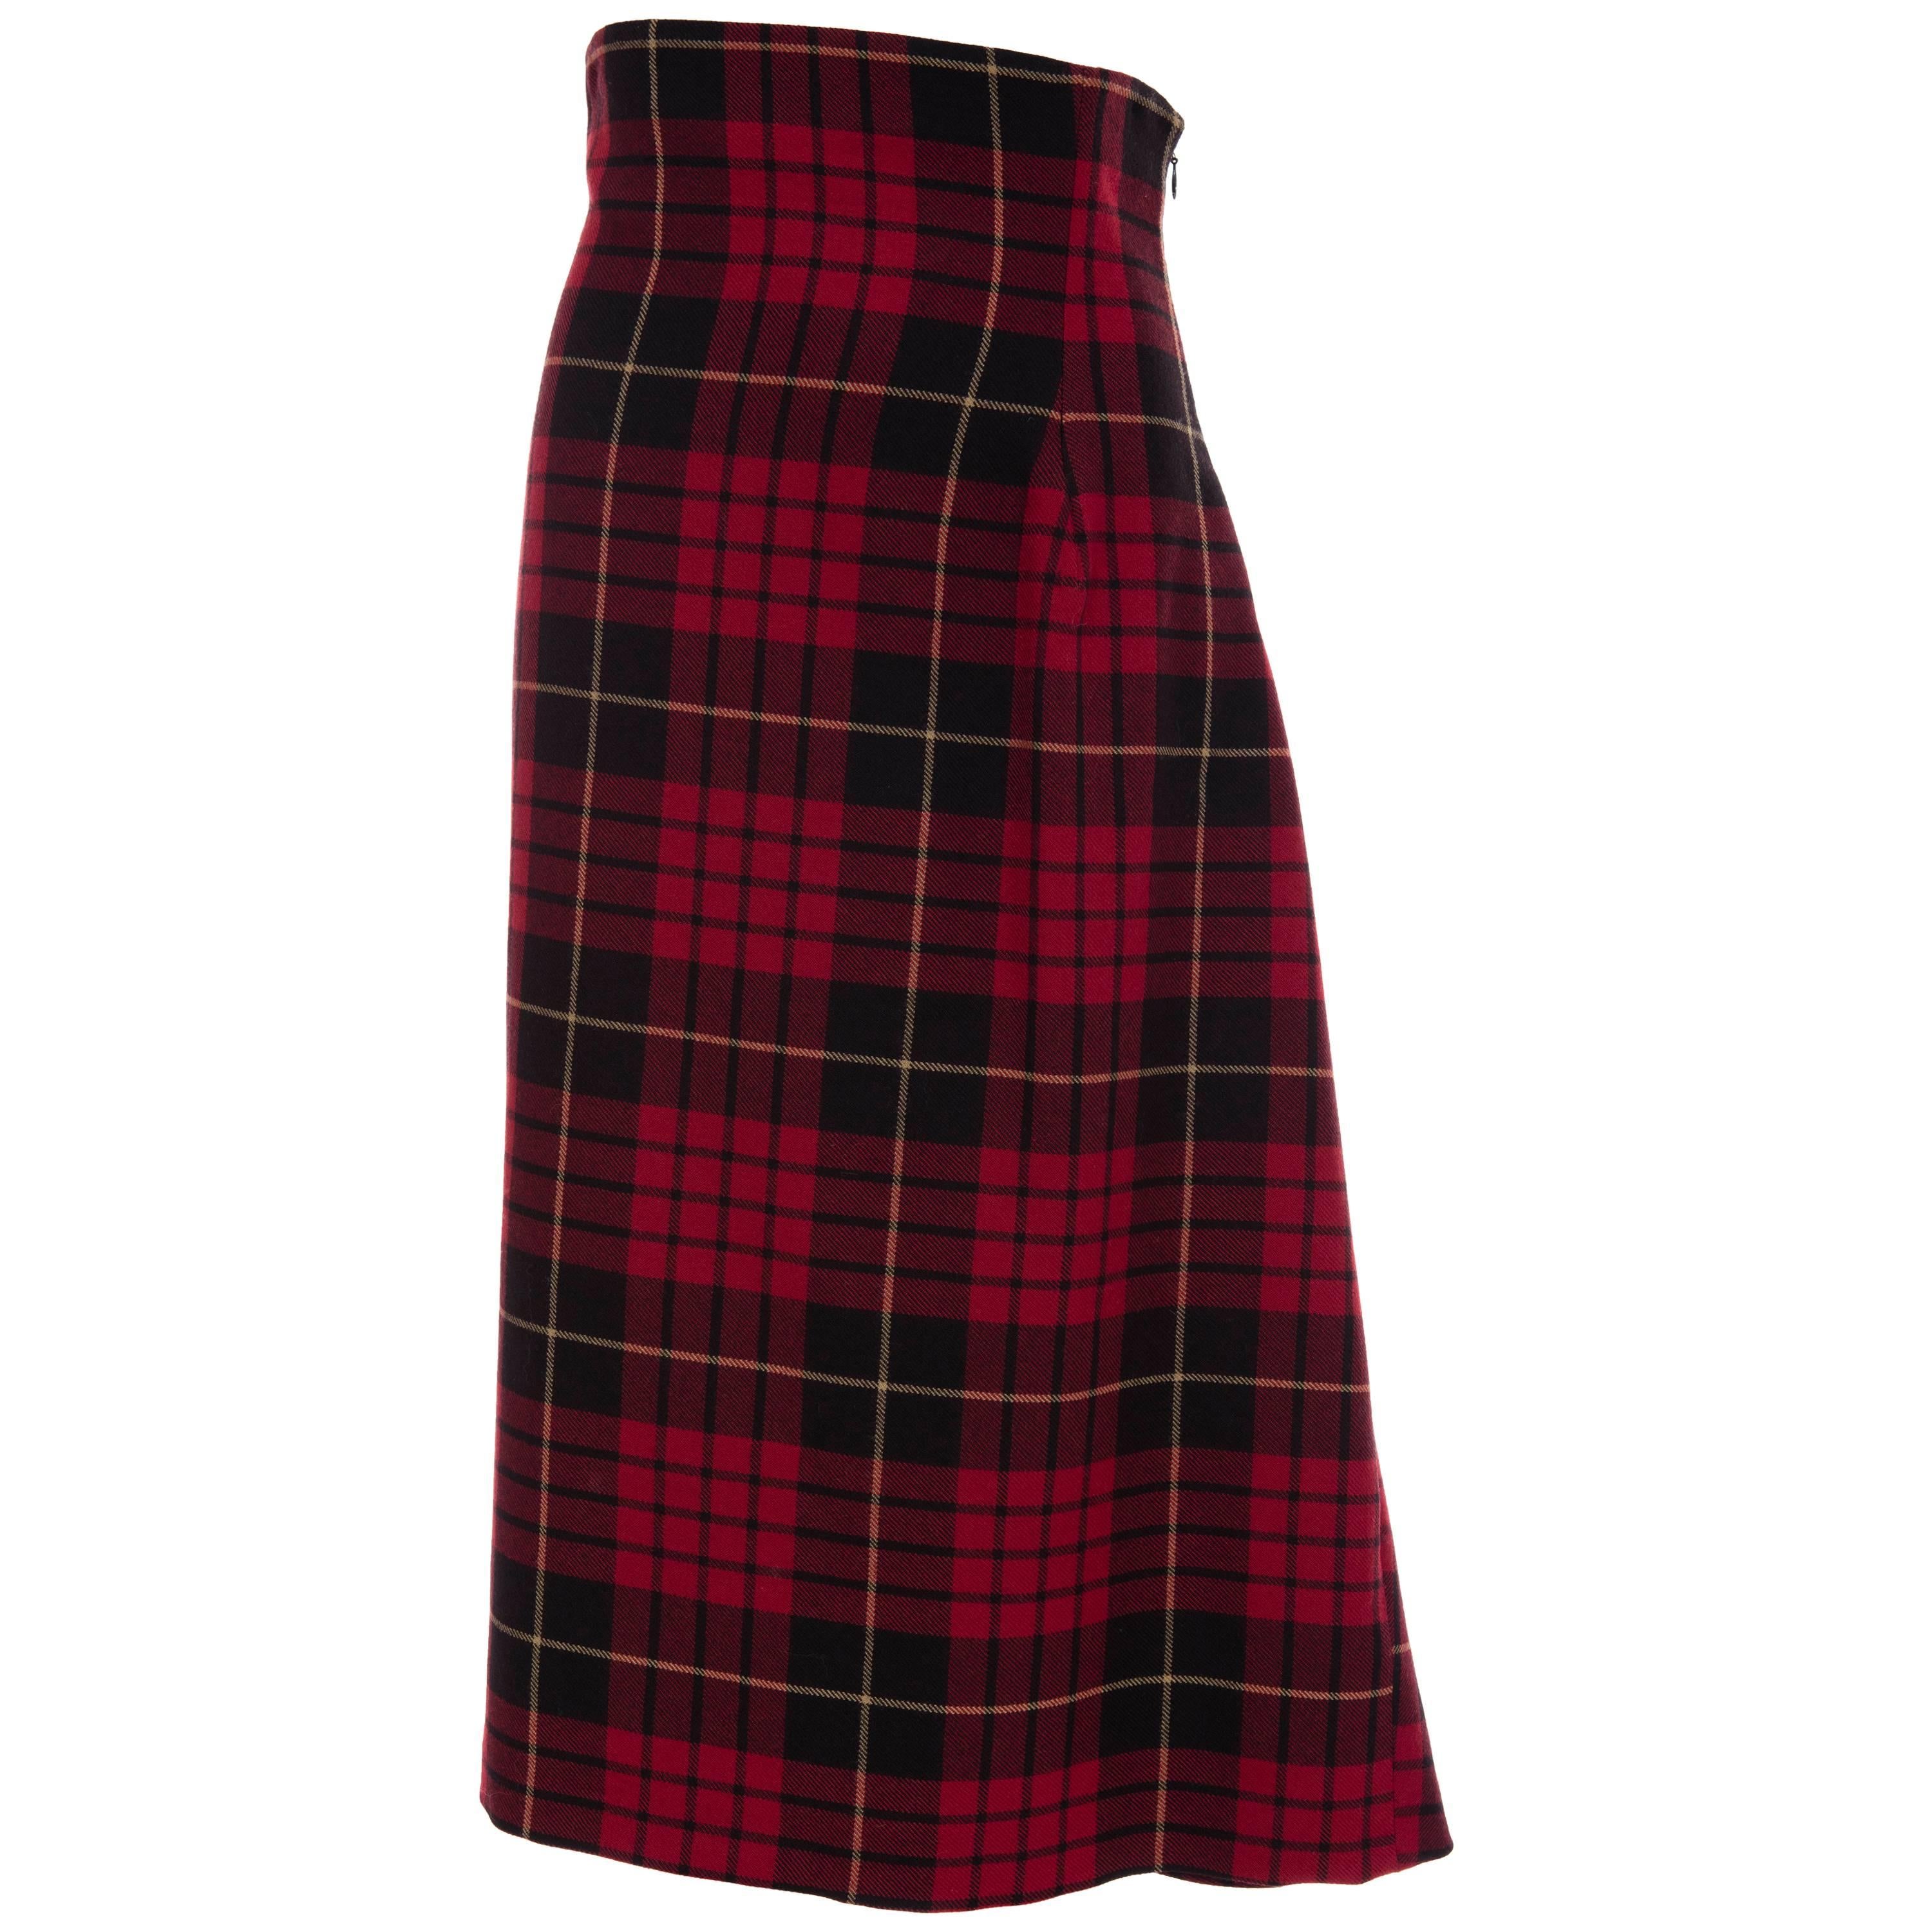 Alexander McQueen Red Wool Tartan Plaid High - Waisted Skirt, Fall 2006